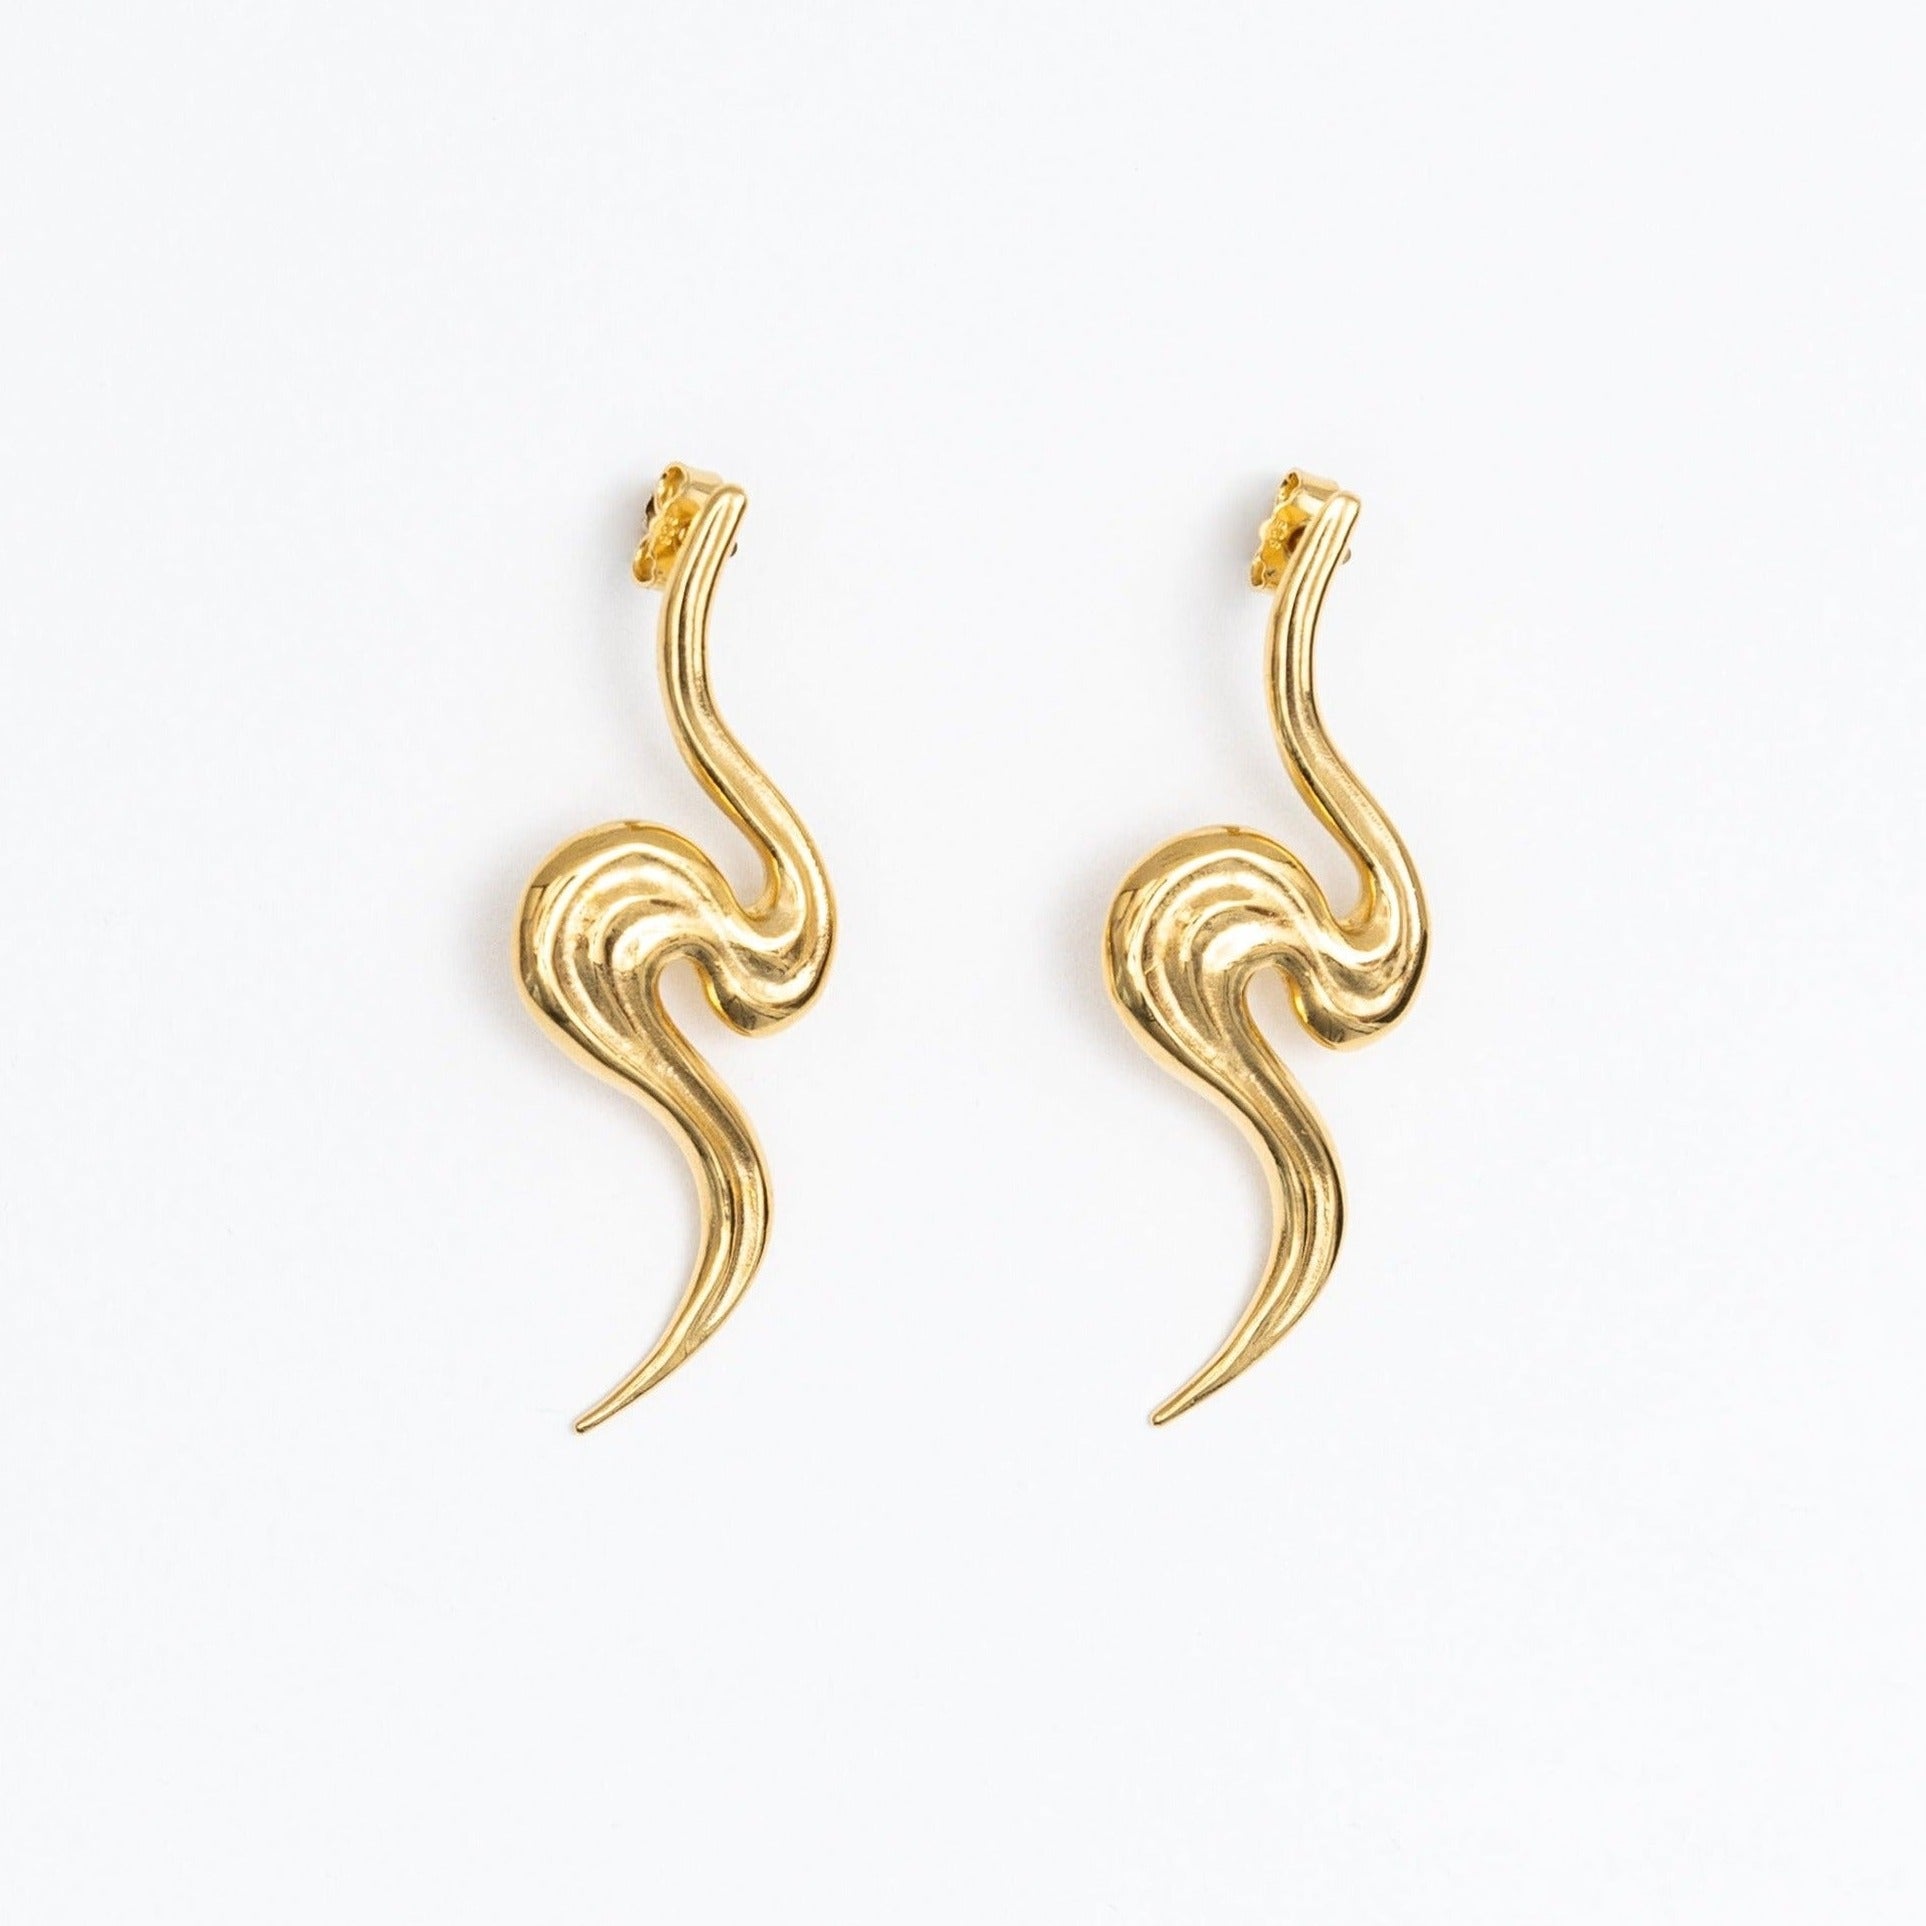 Pair of gold earrings